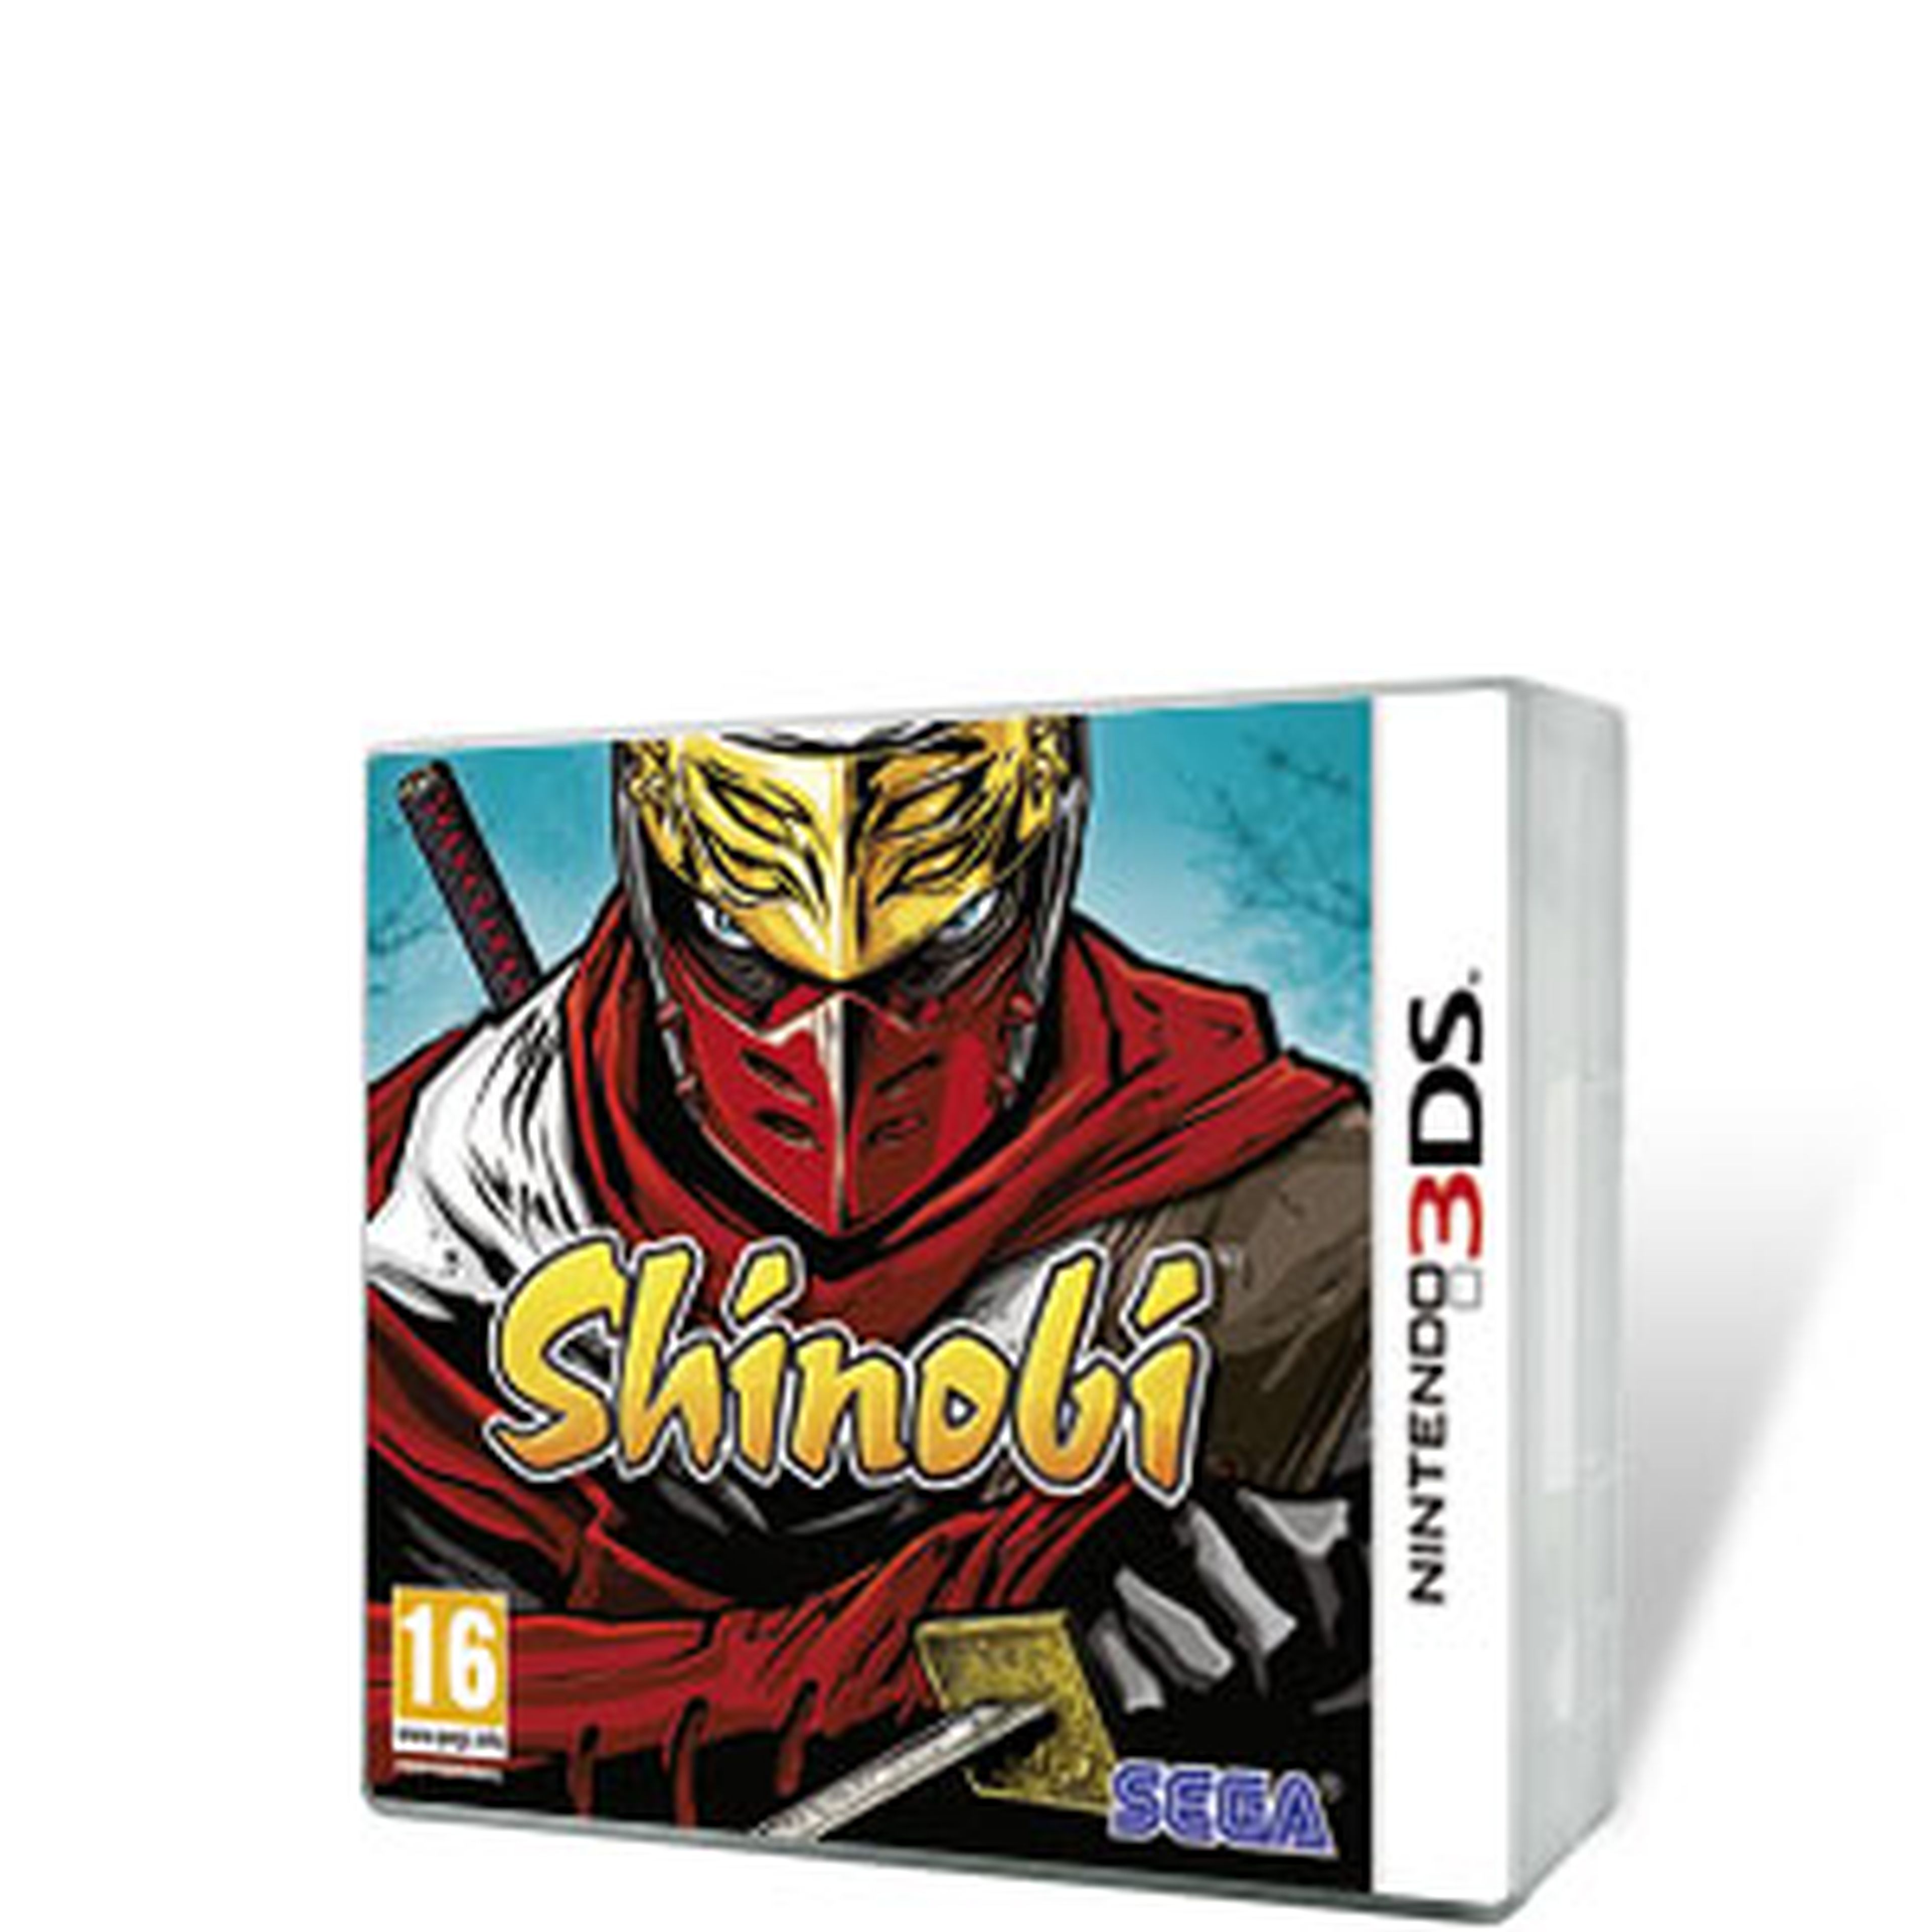 Shinobi 3D para 3DS